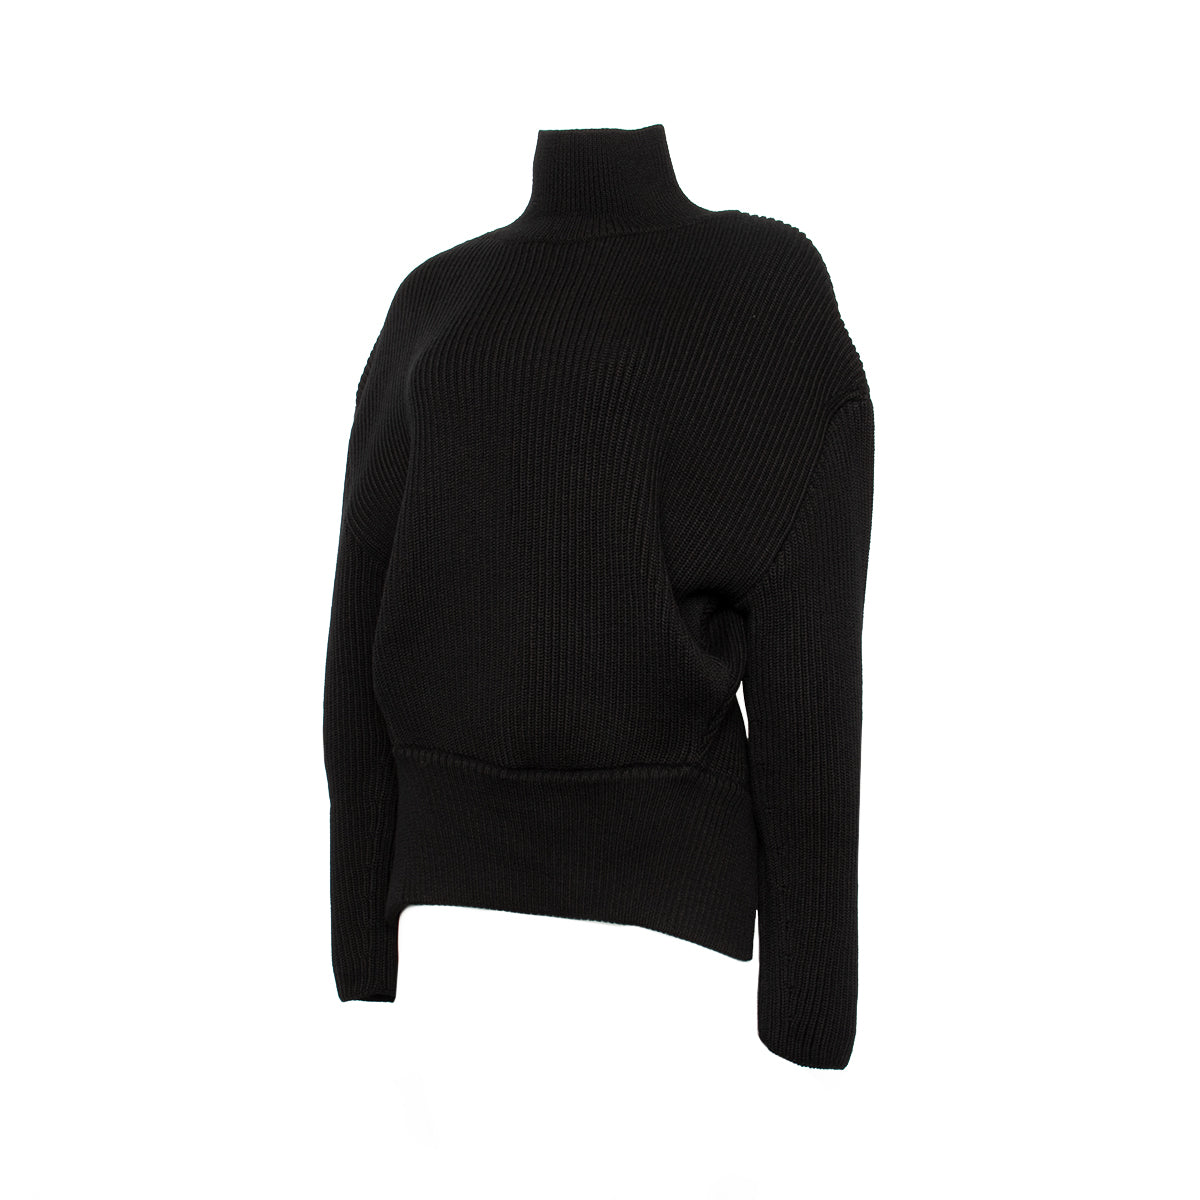 Upside Down Turtleneck Sweater in Black